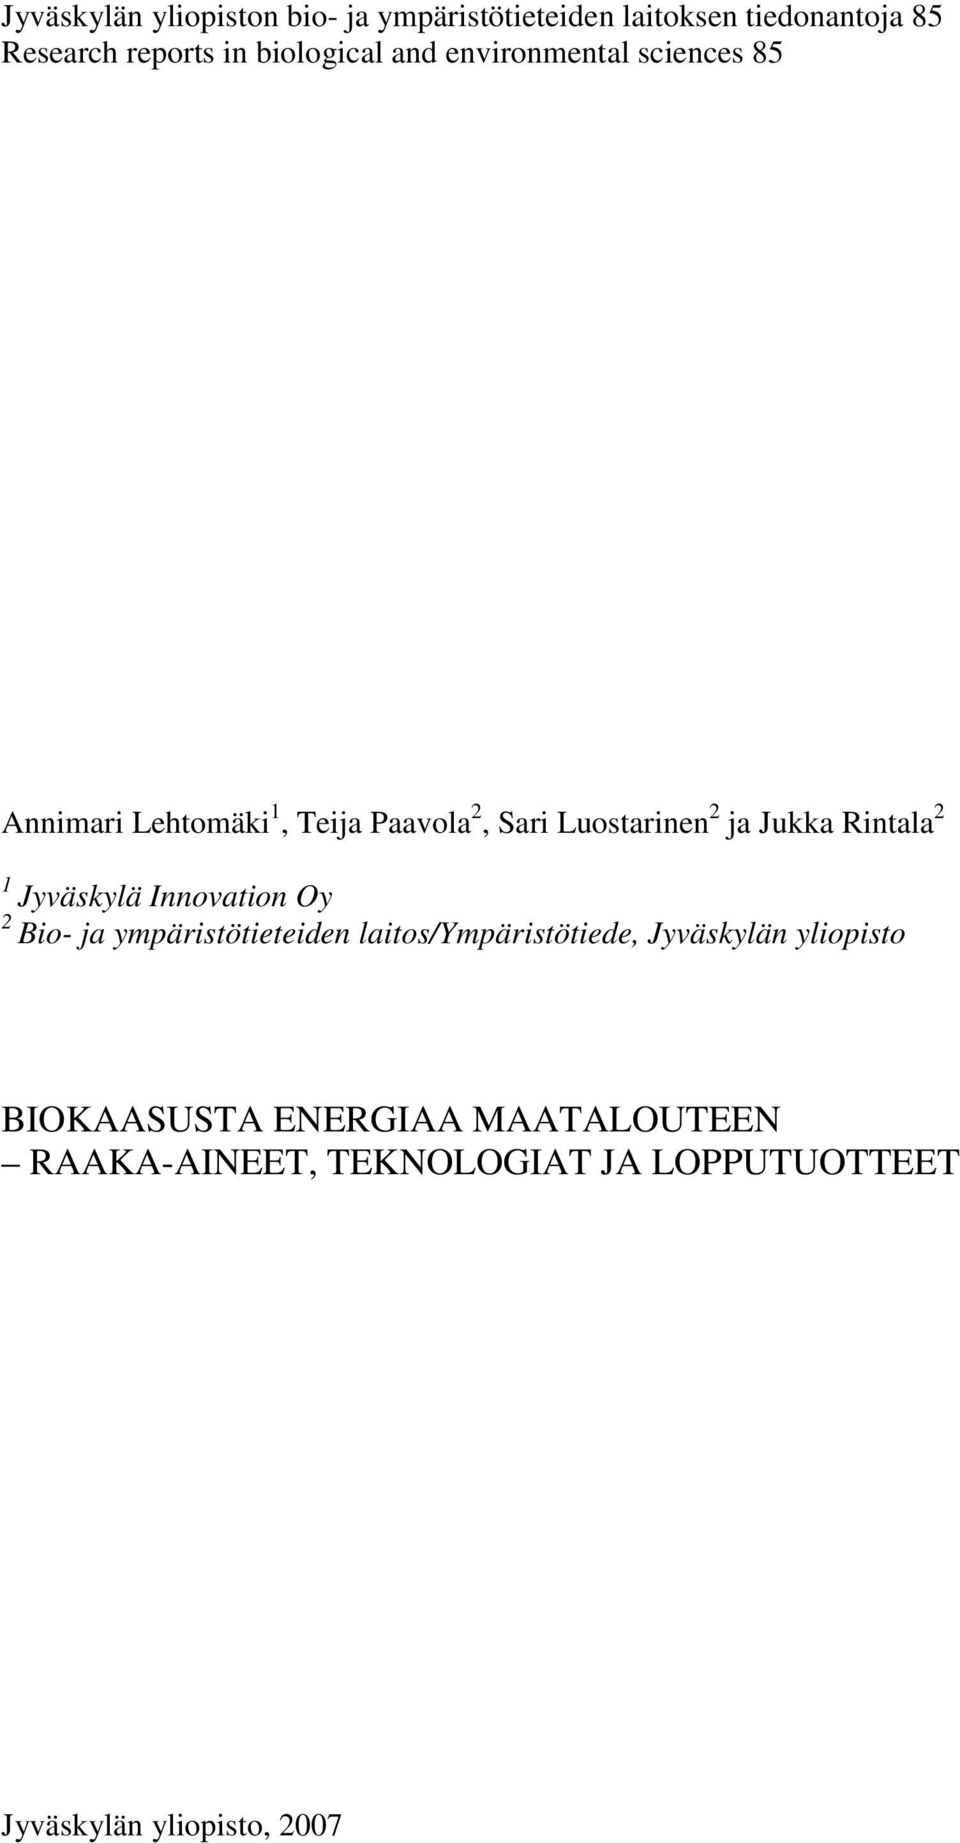 Jukka Rintala 2 1 Jyväskylä Innovation Oy 2 Bio- ja ympäristötieteiden laitos/ympäristötiede,